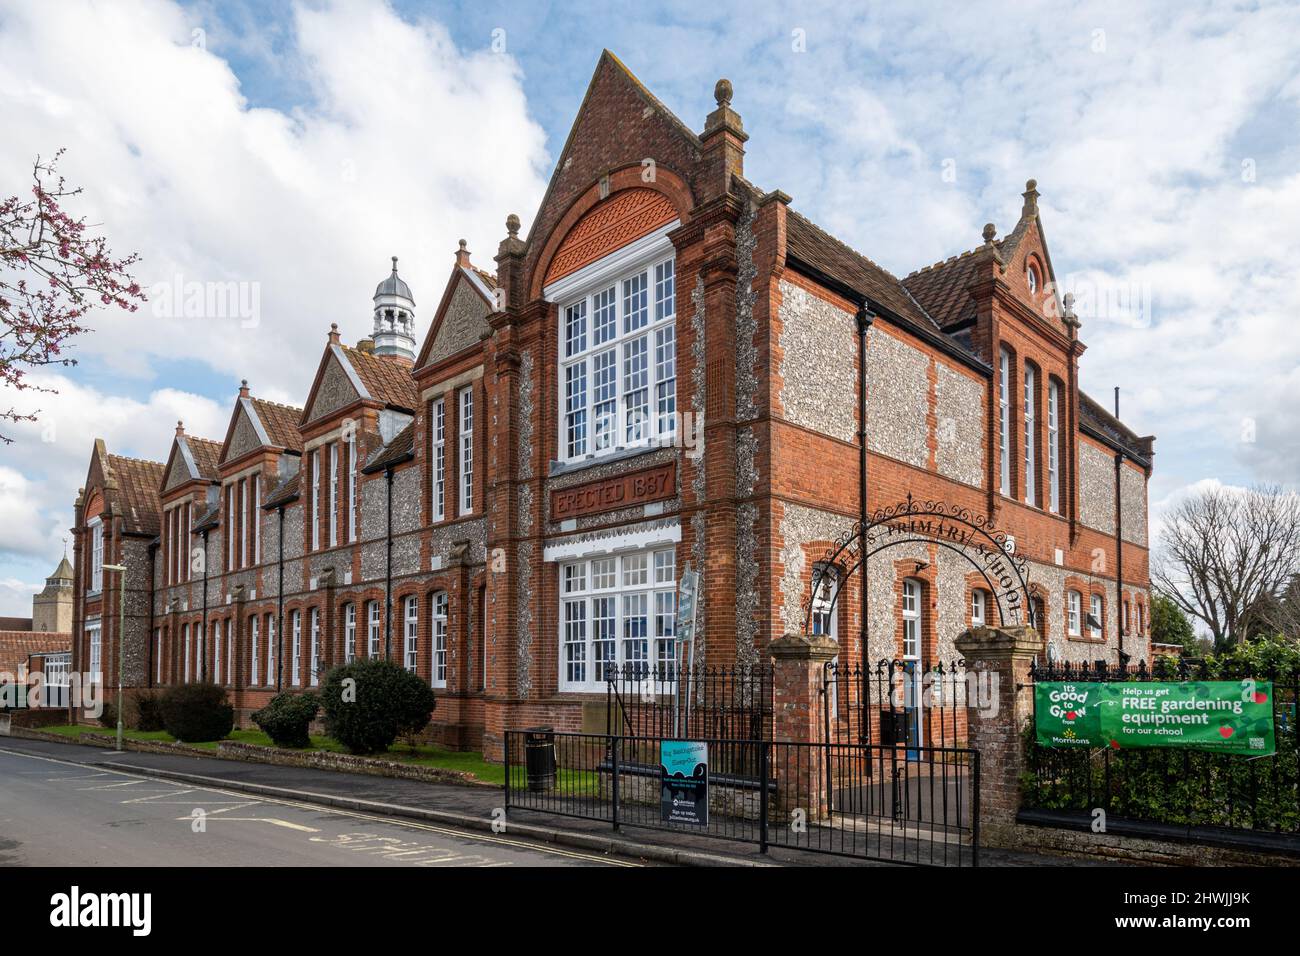 École primaire de Fairfields dans la ville de Basingstoke, Hampshire, Angleterre, Royaume-Uni. Extérieur du bâtiment victorien en brique et en flanelle. Banque D'Images